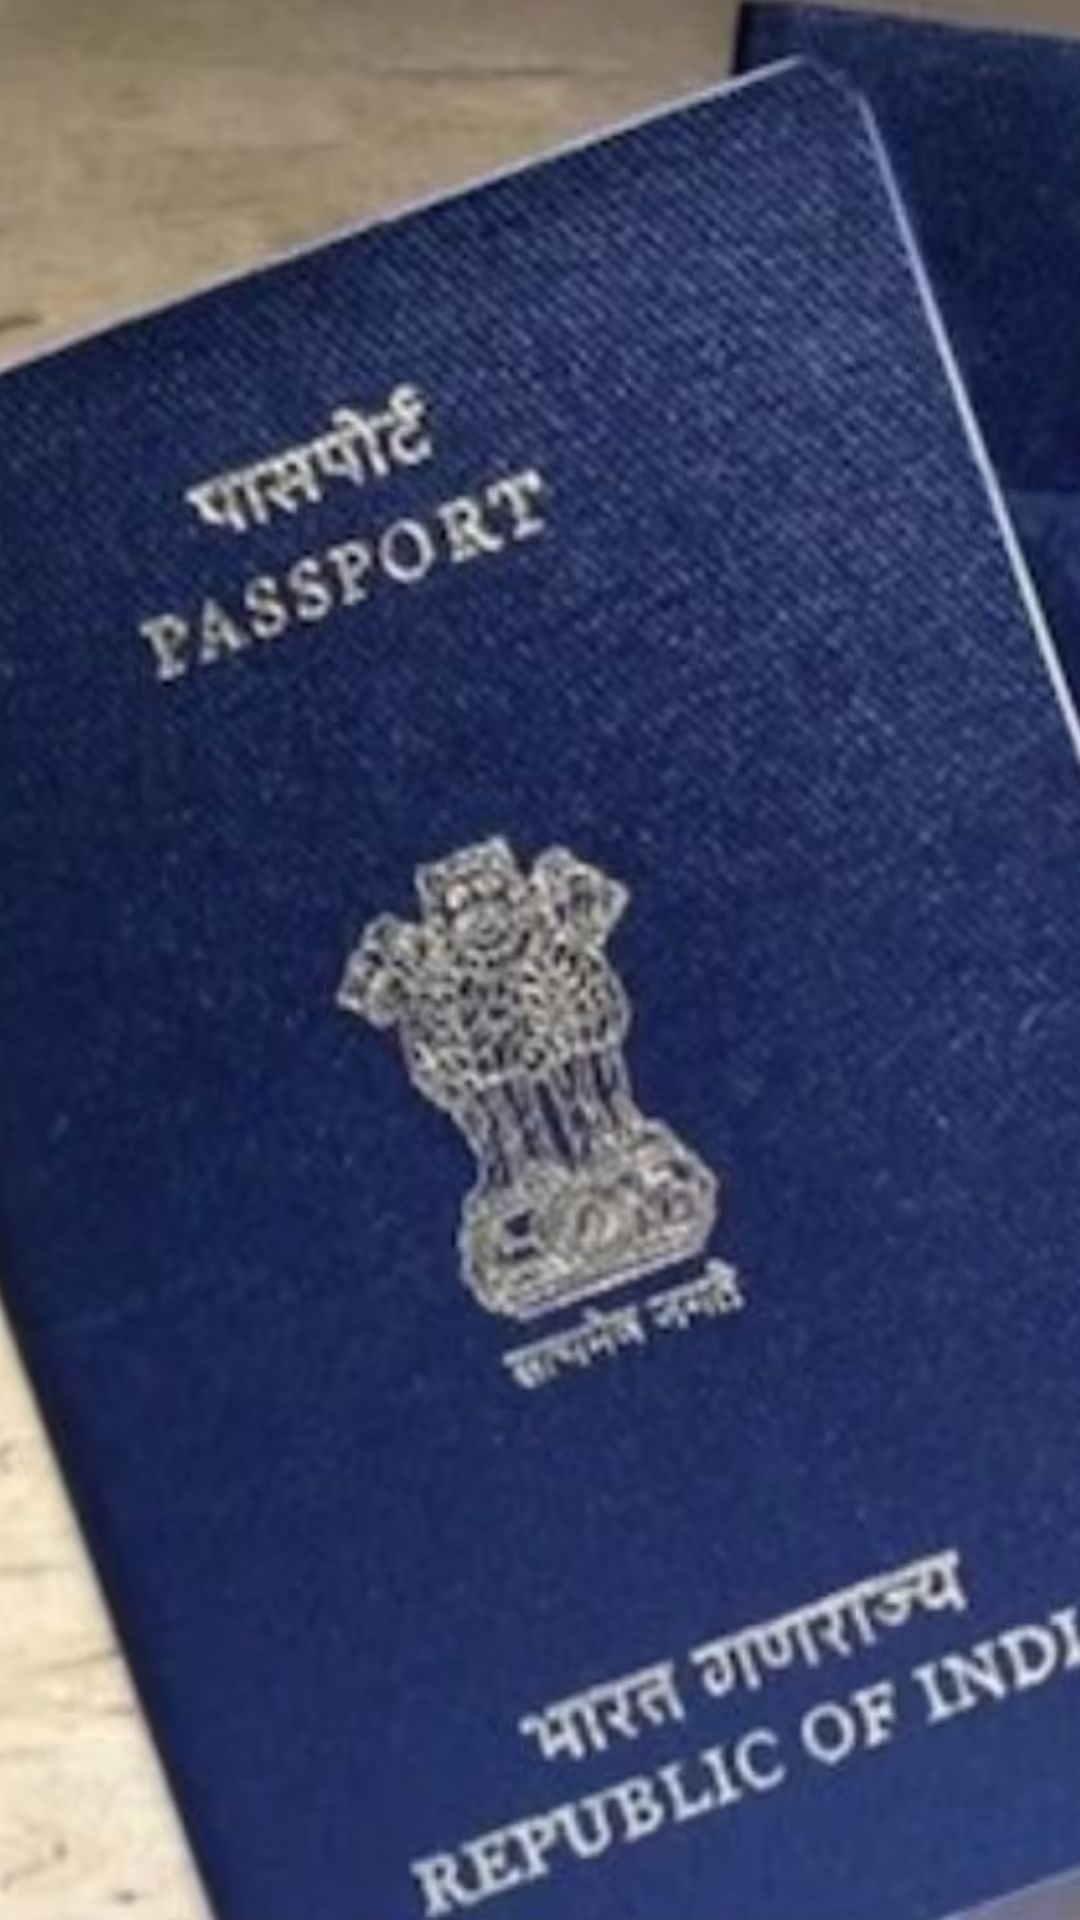 भारतीय पासपोर्ट के चार रंग, किसका कितना है महत्व?